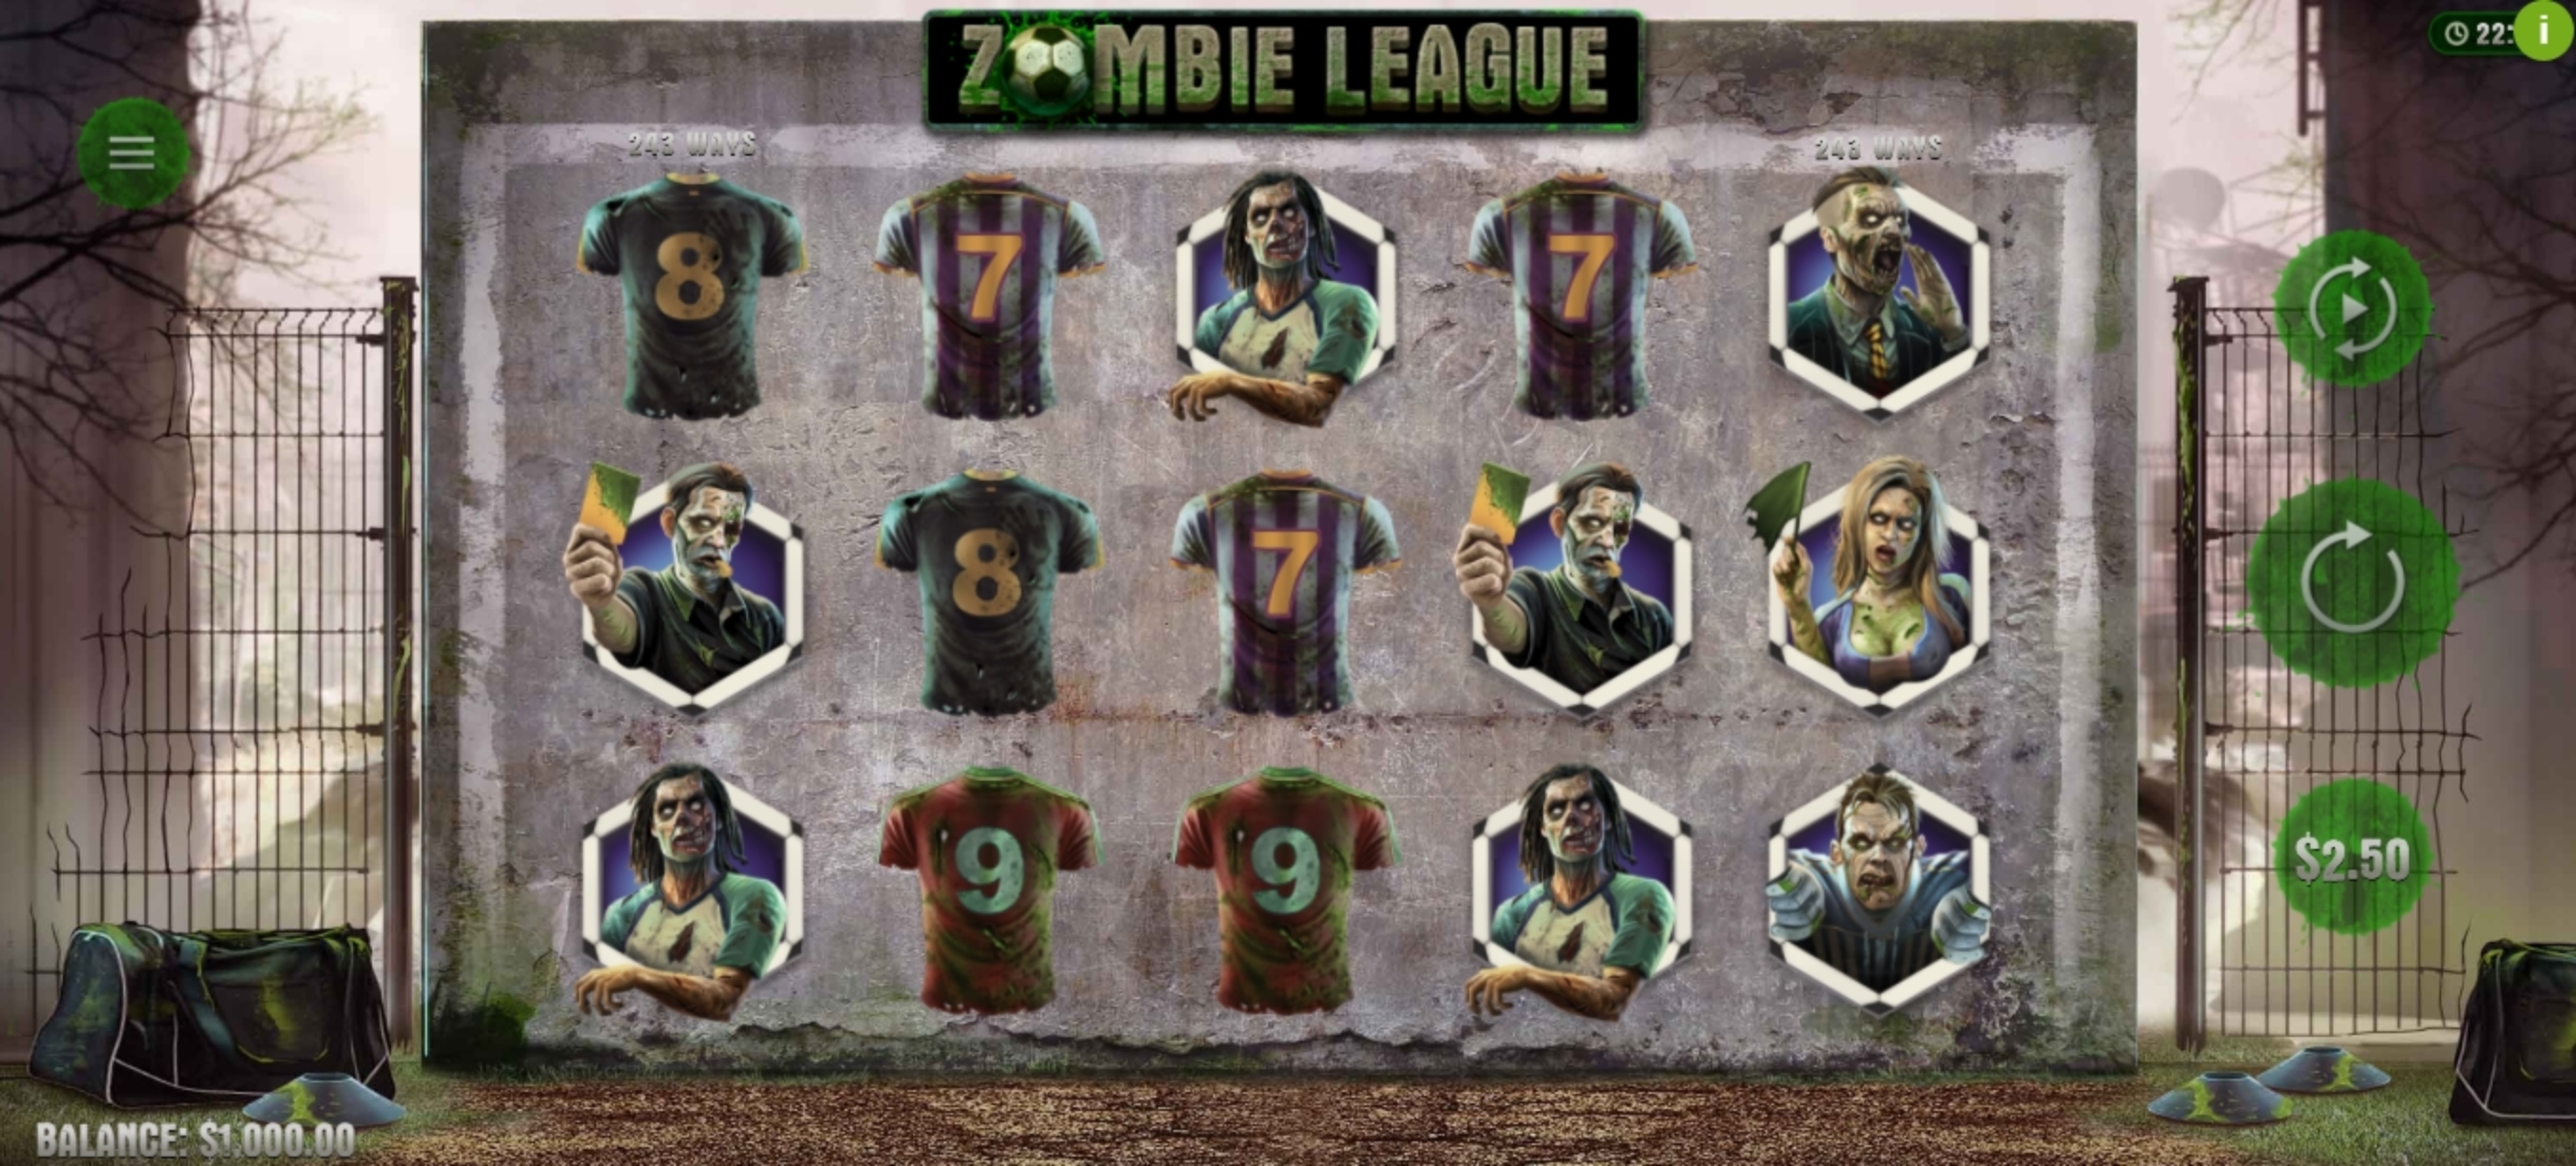 Reels in Zombie League Slot Game by Woohoo